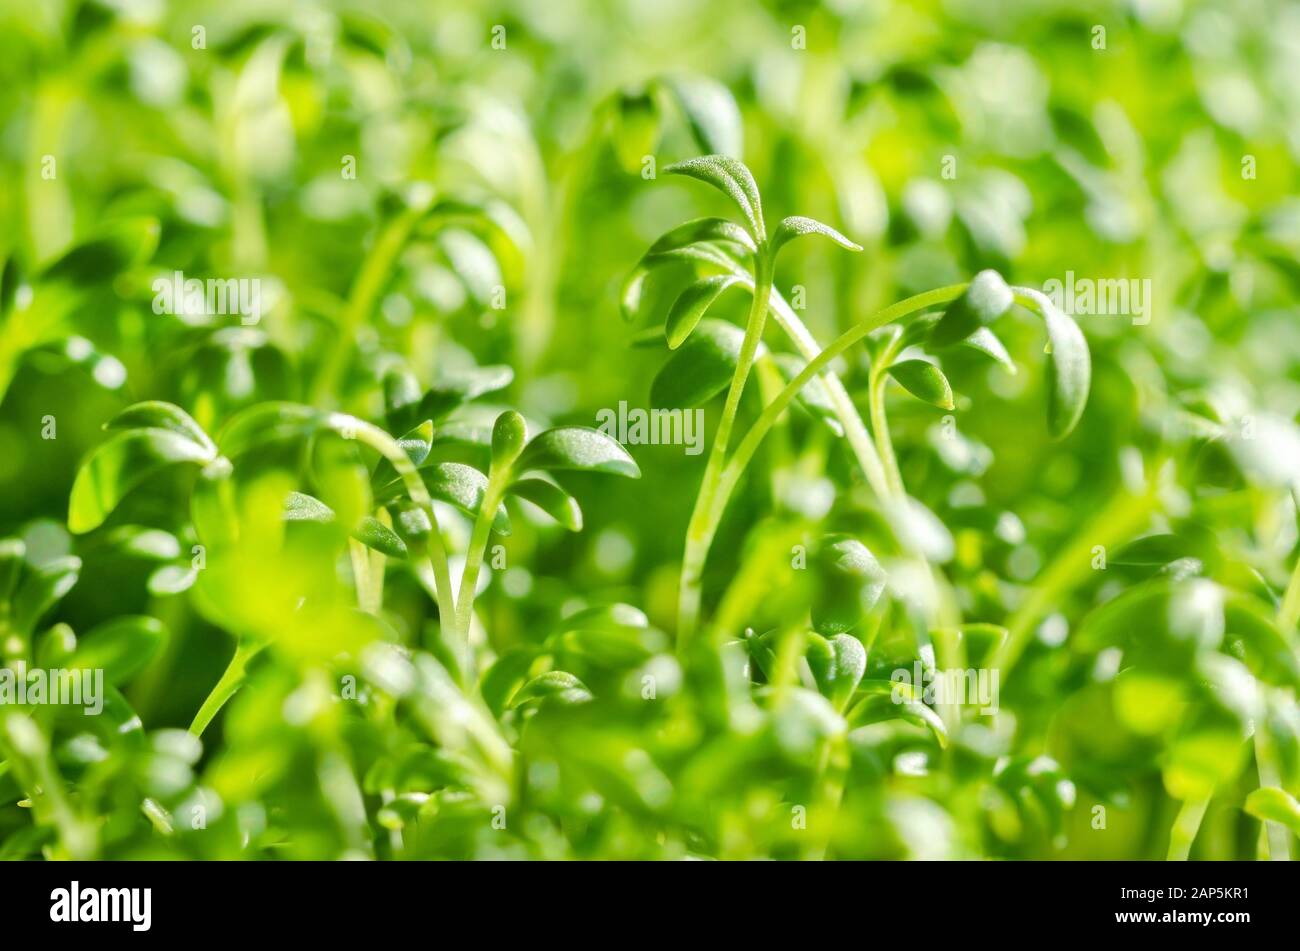 Le cresson alénois sprouts, macro photo alimentaire. Vue avant du cress, aussi pepperwort ou peppergrass, Lepidium sativum, une plante comestible à croissance rapide. Banque D'Images